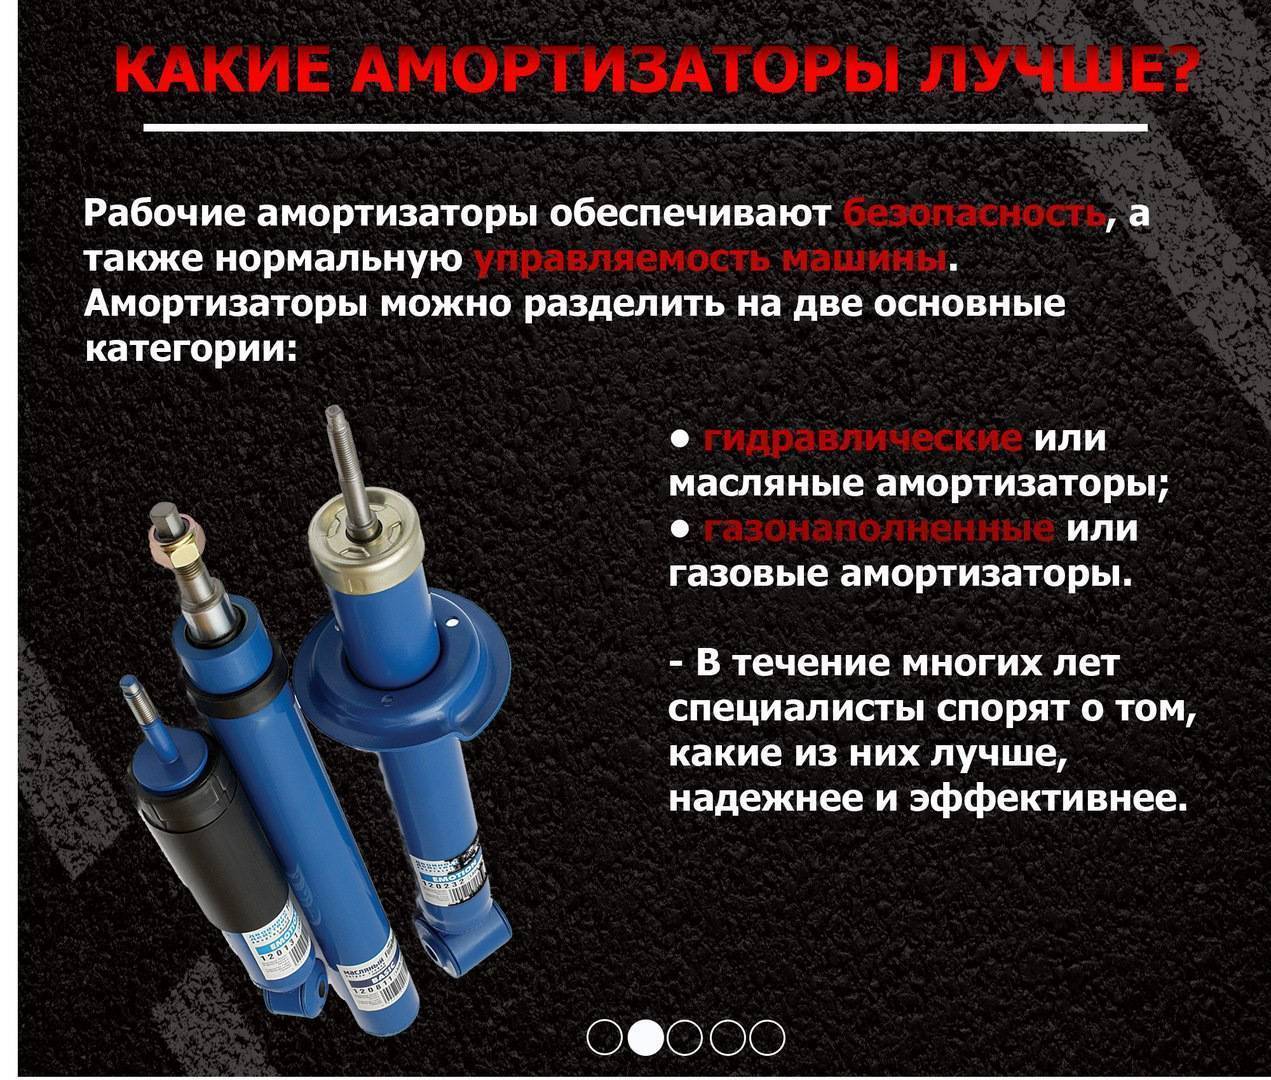 Какие амортизаторы лучше: газовые или масляные? газомаслянные амортизаторы - отзывы :: syl.ru